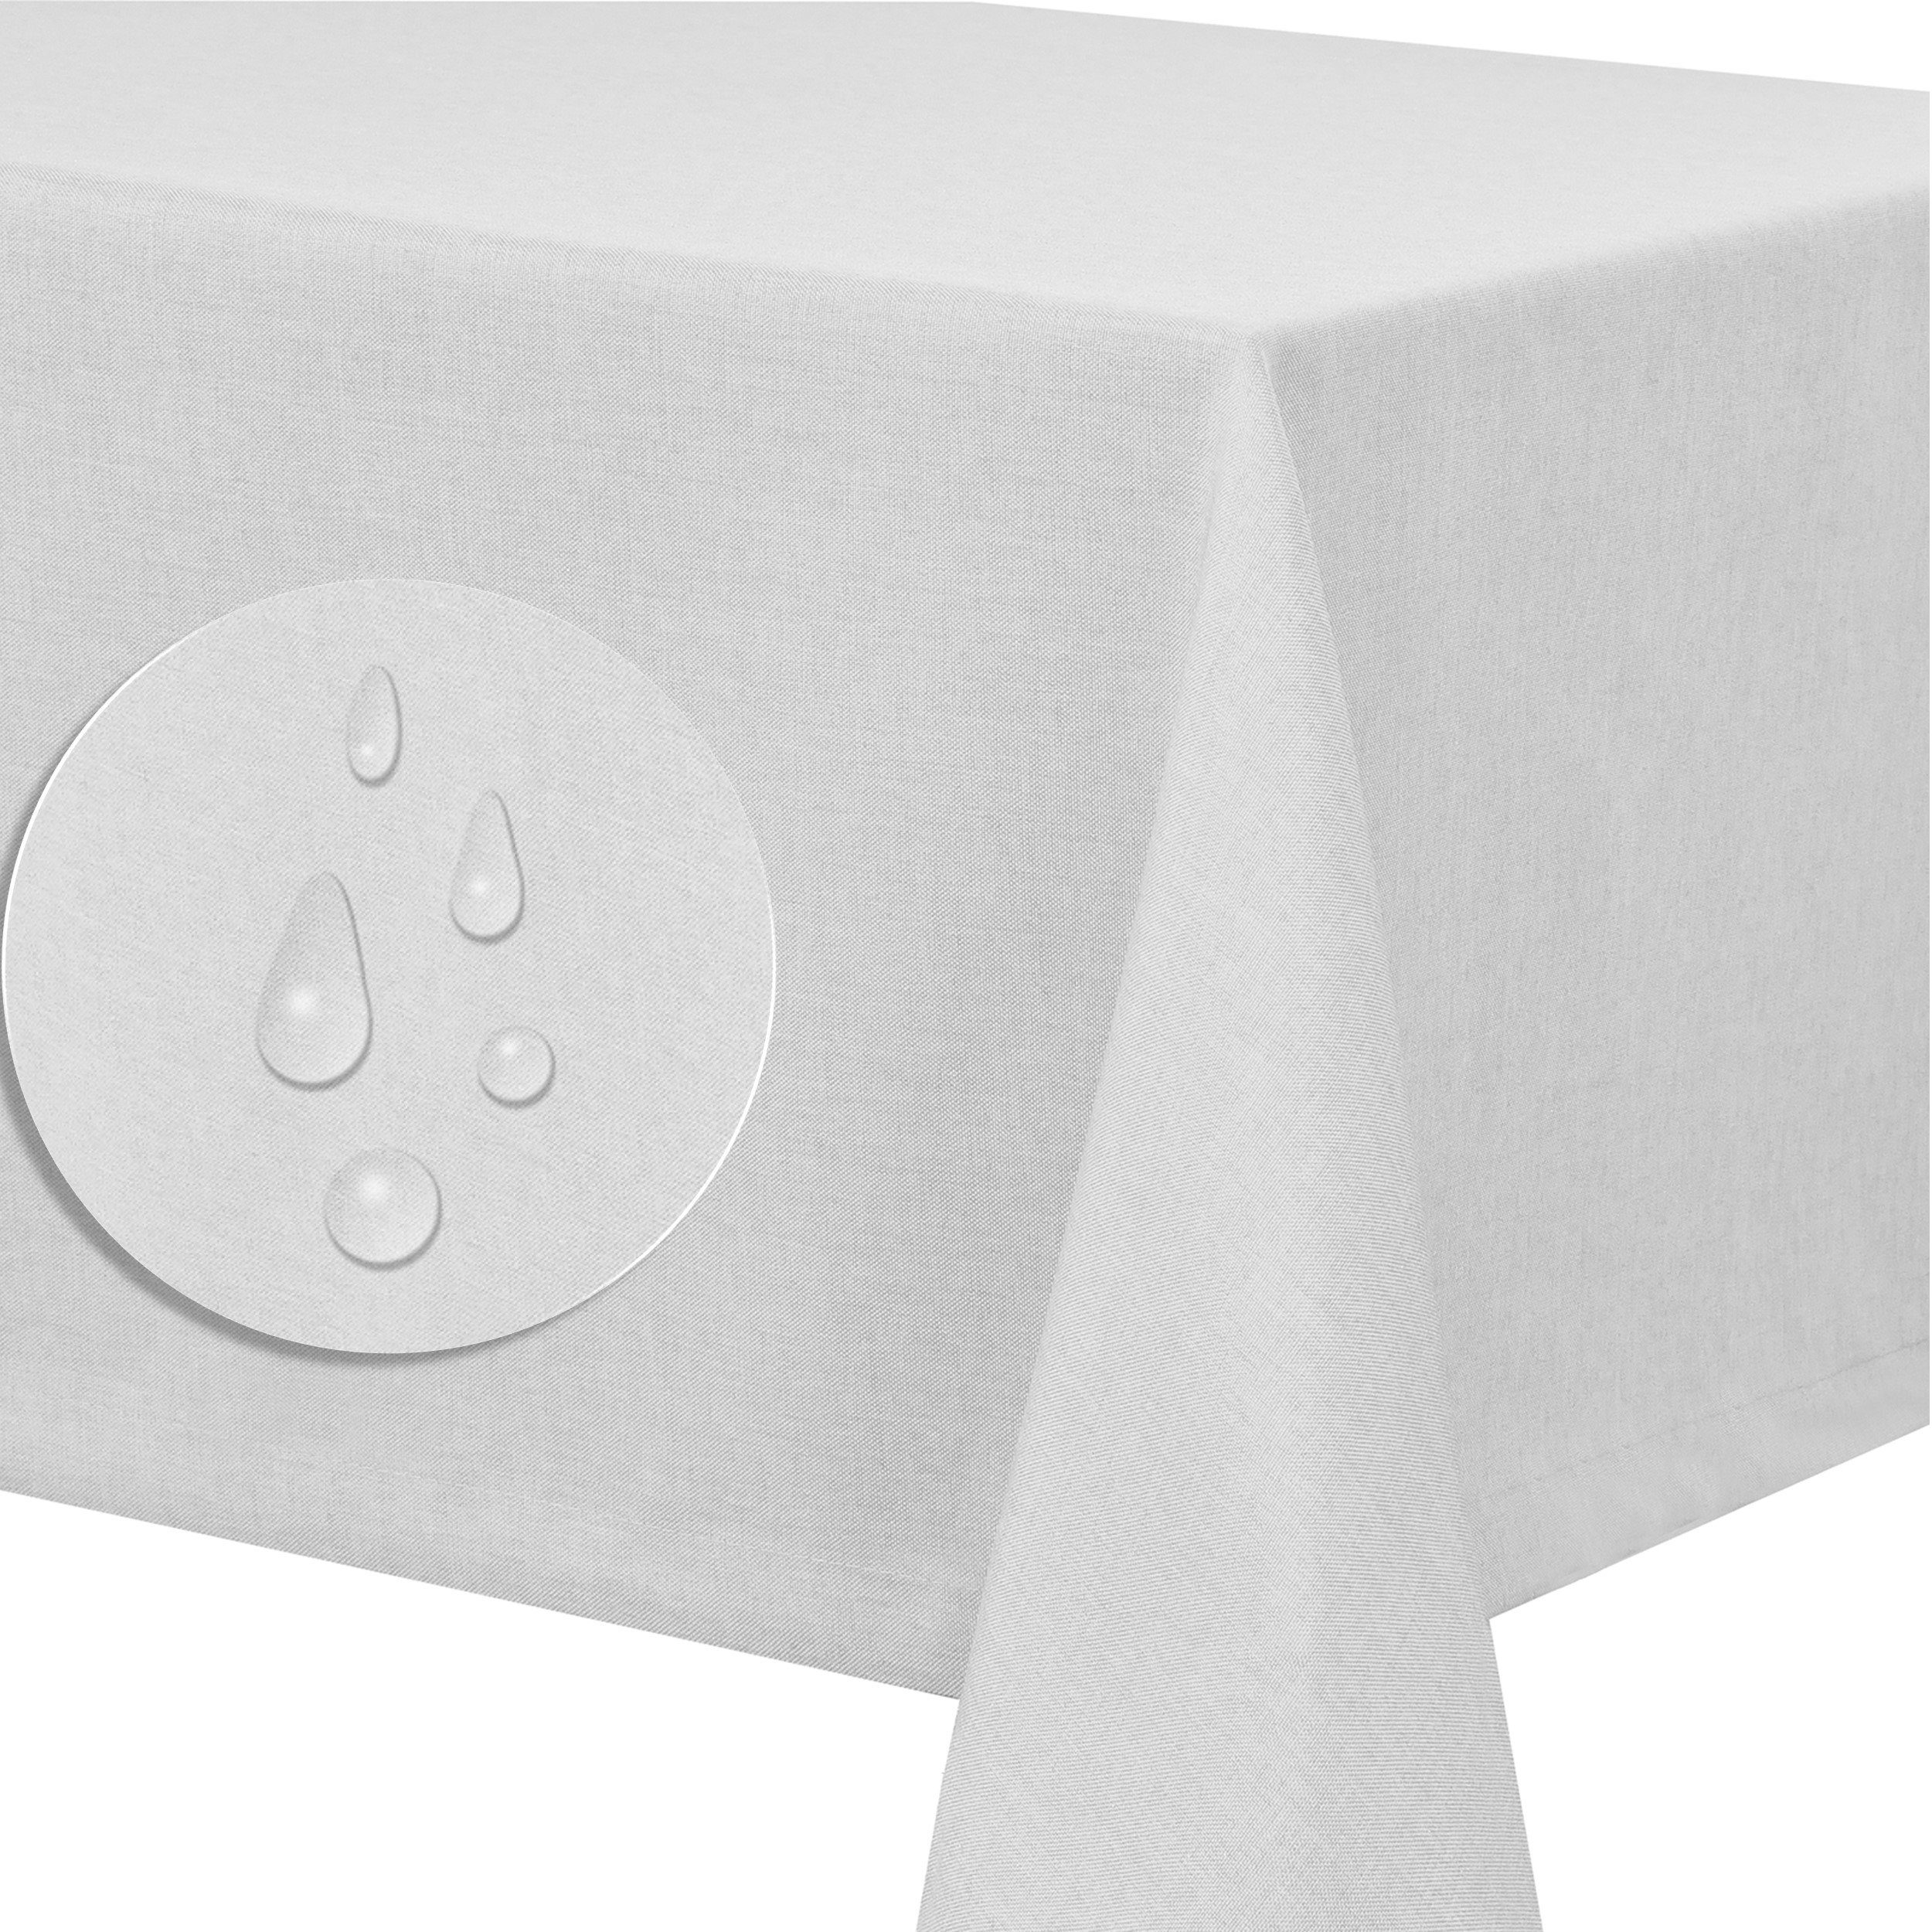 Fiora Tischdecke Leinenstruktur Tischdecke Tischtuch Leinen Optik pflegeleicht schmutzabweisend abwaschbar Lotuseffekt tafeltuch Weiss